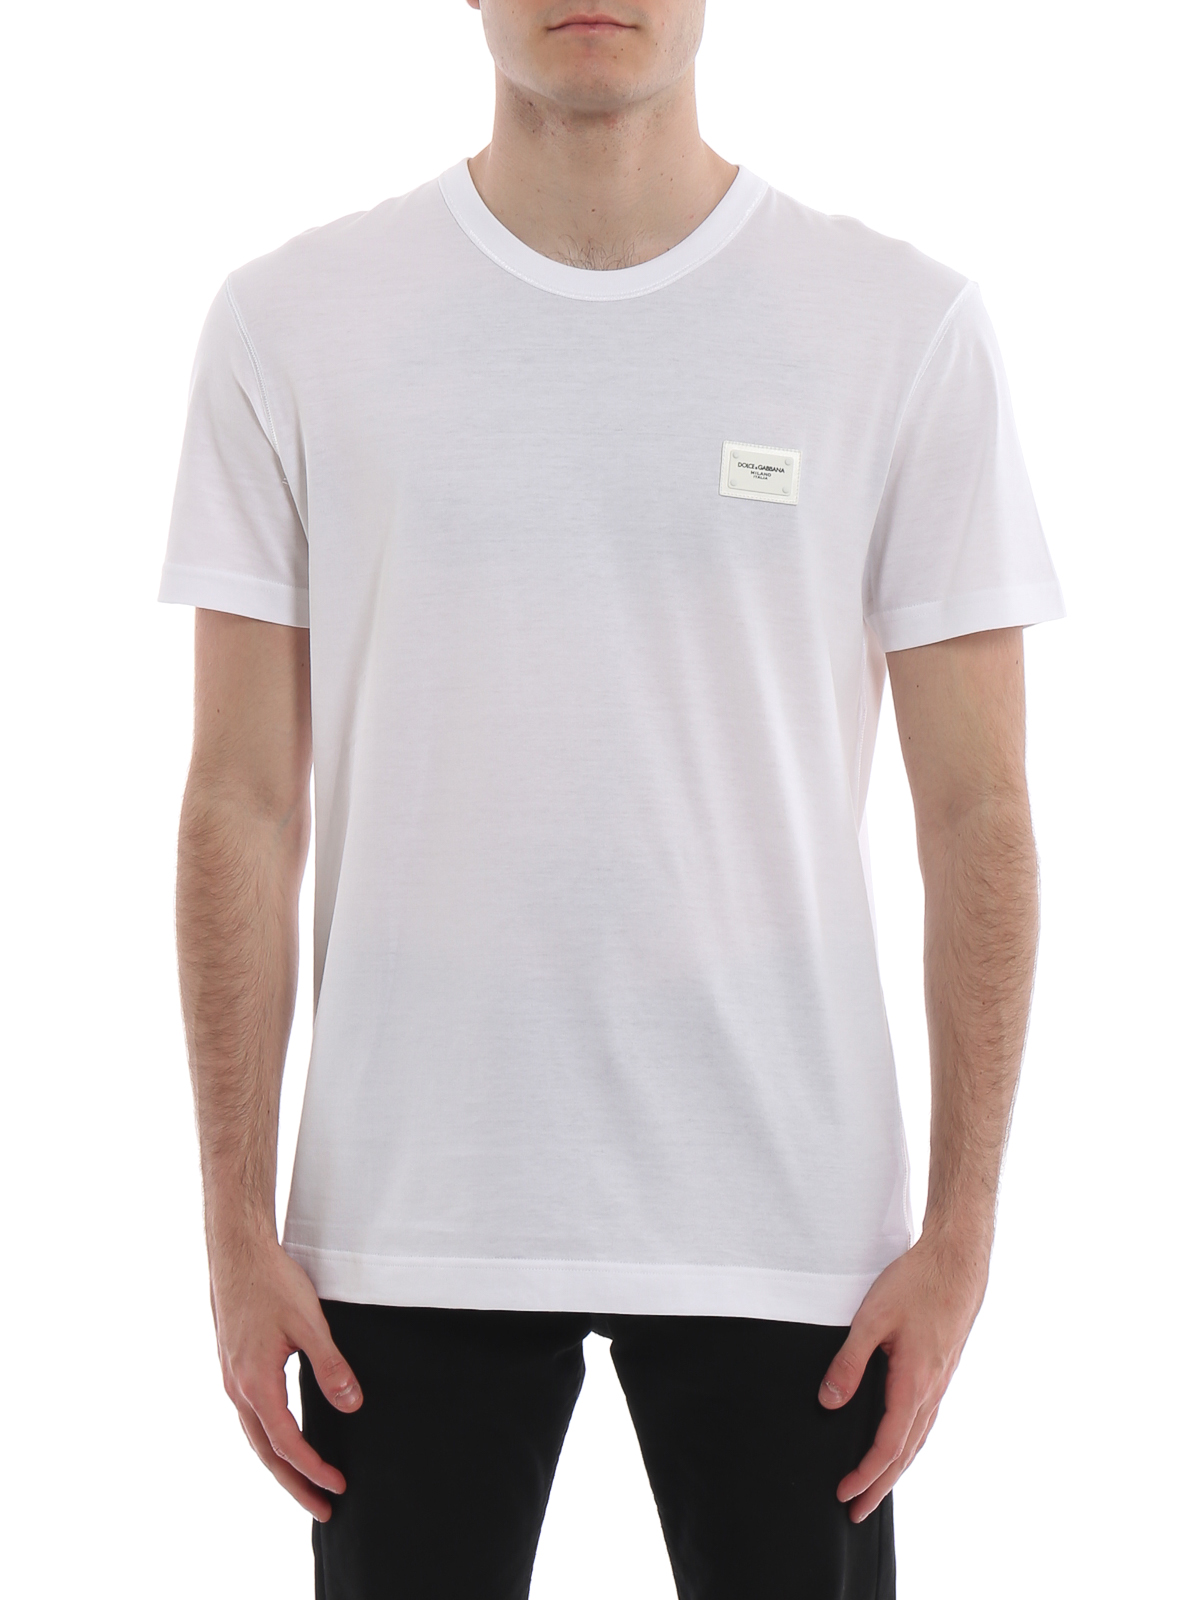 T-shirts Dolce & Gabbana - Logo plaque white T-shirt - G8KJ9TFU7EQW0800